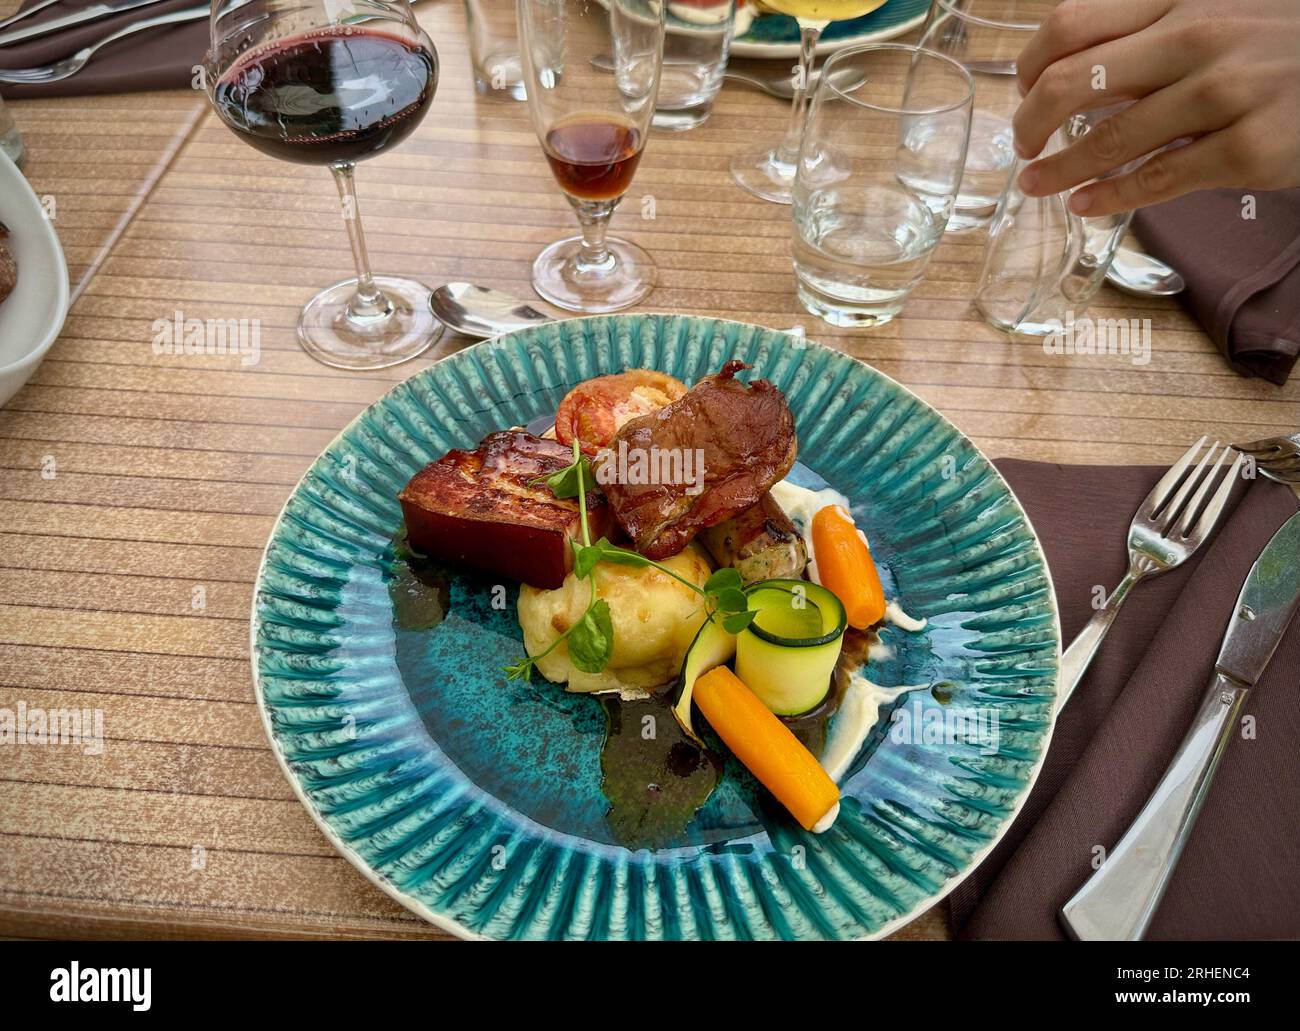 Delizie gastronomiche: Colorato pasto di maiale presso un ristorante, servito su un piatto blu con vino Foto Stock